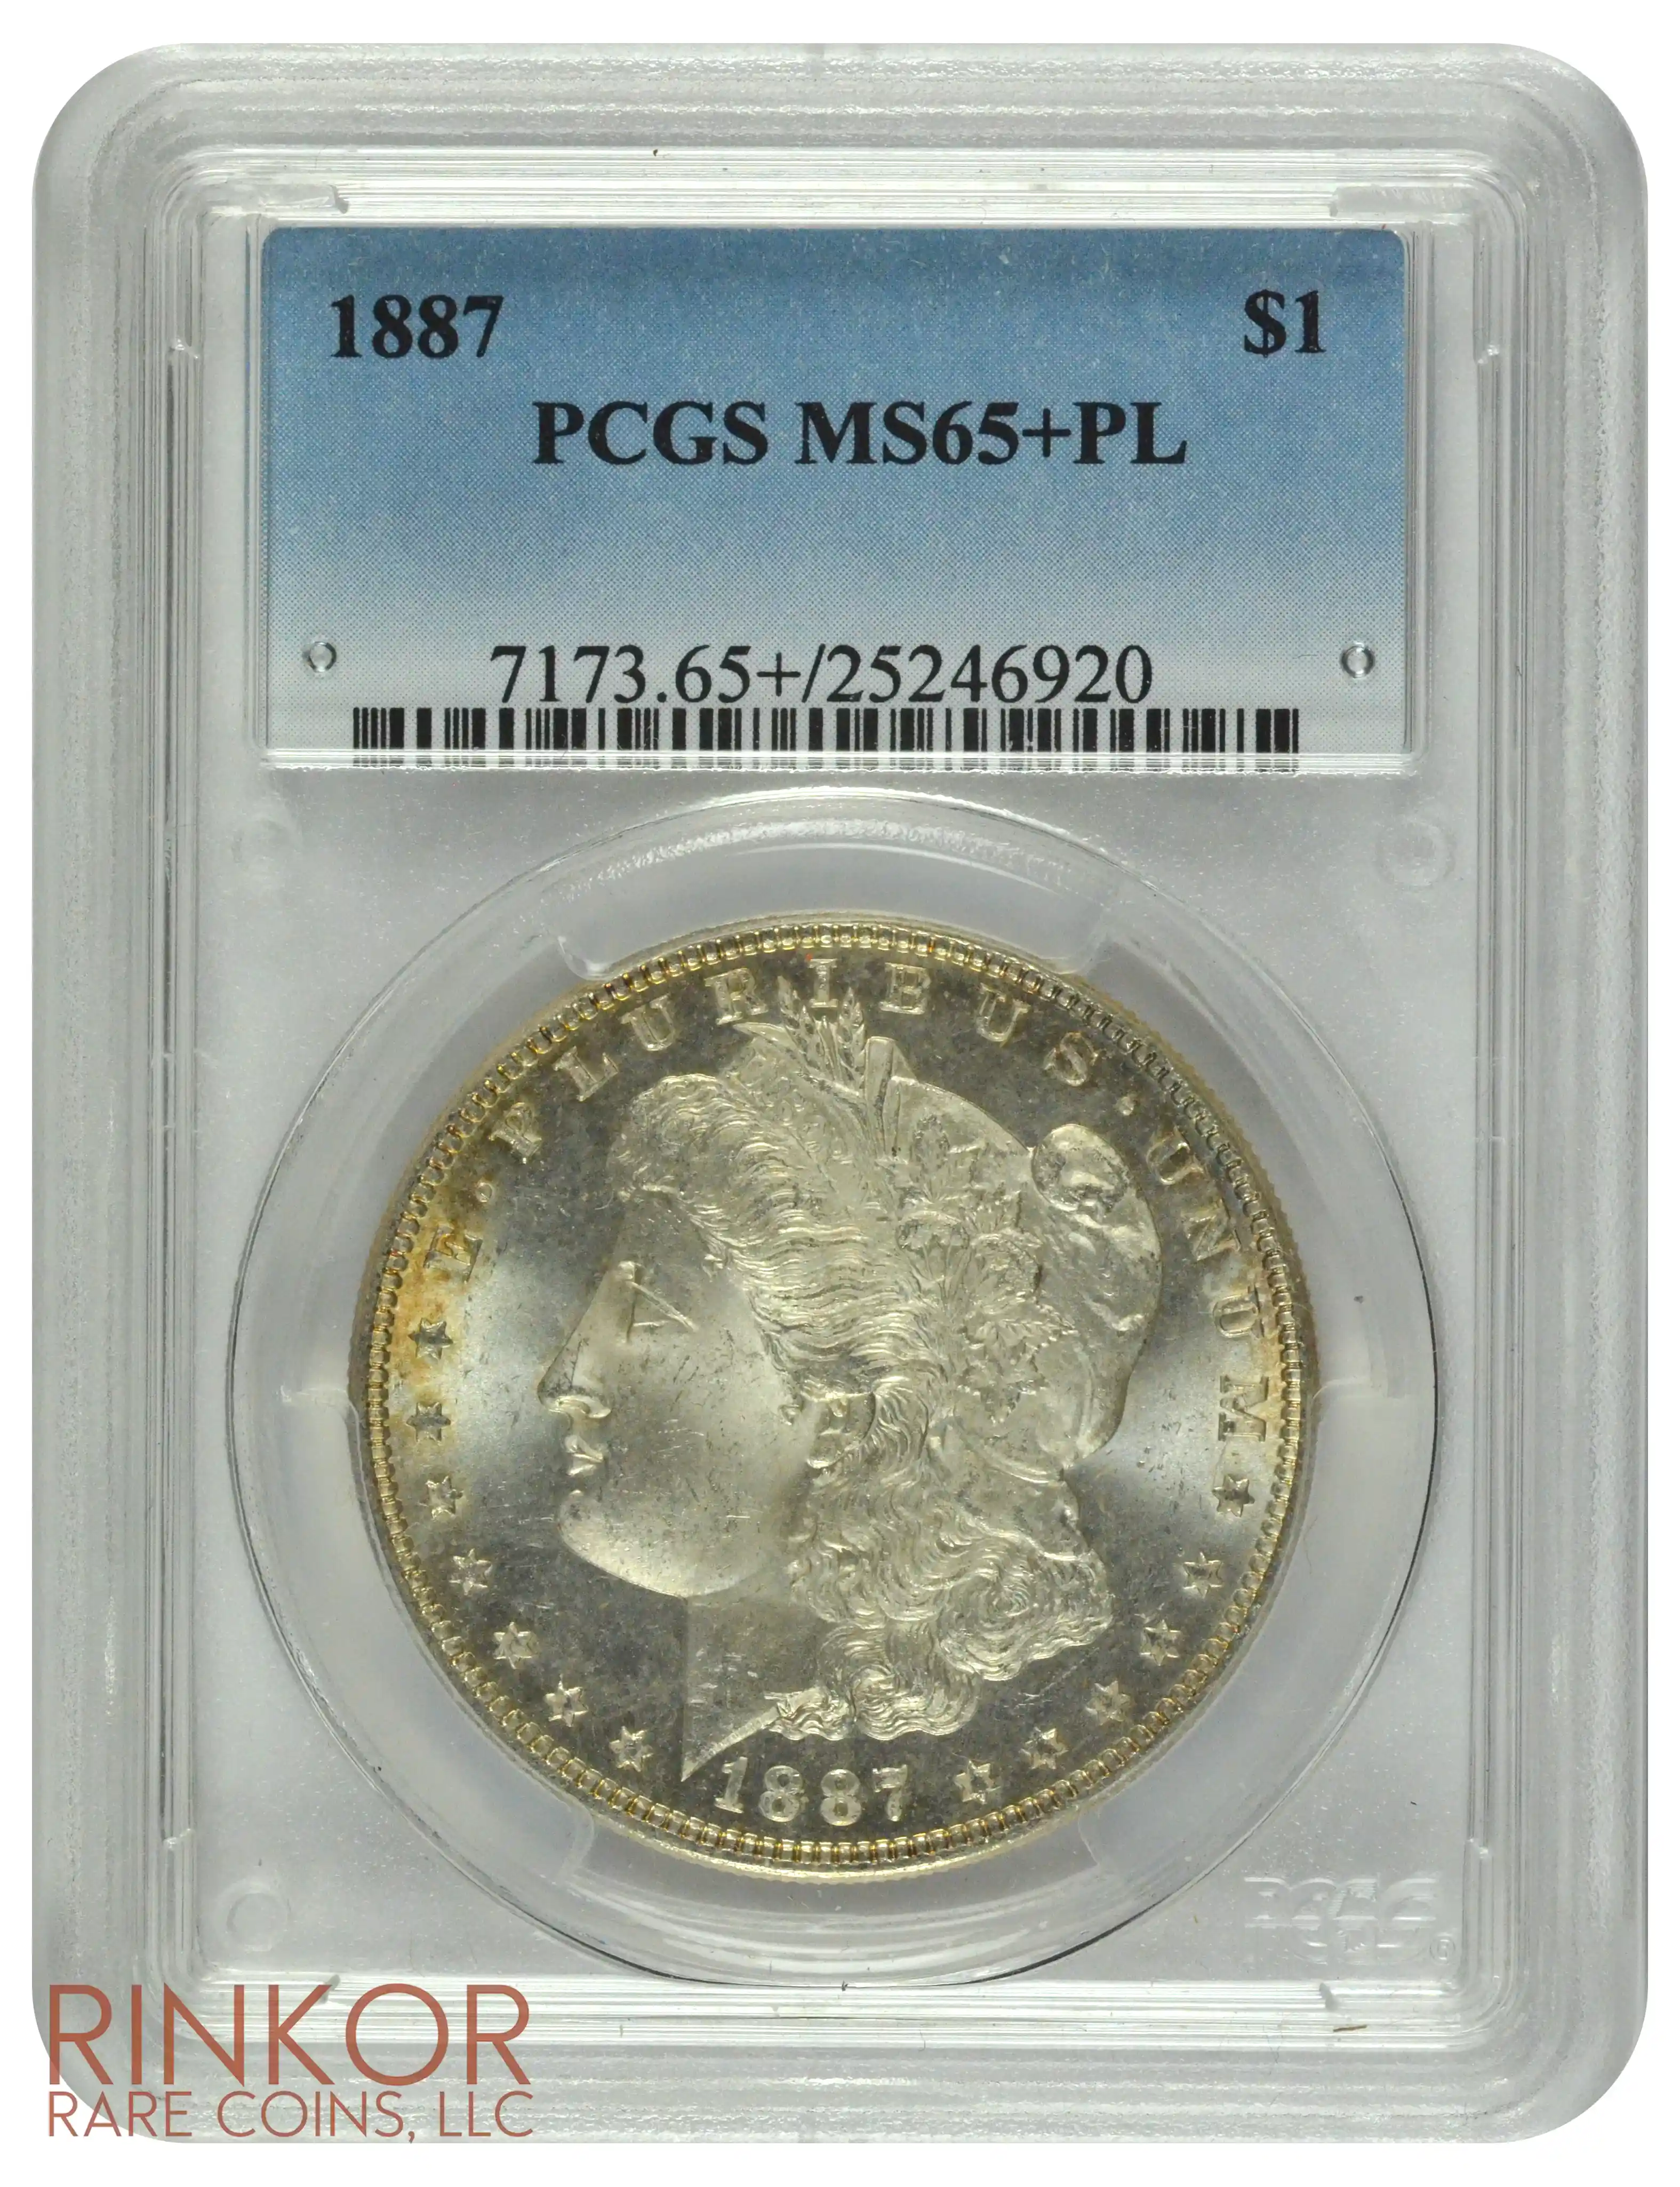 1887 $1 PCGS MS 65+ PL